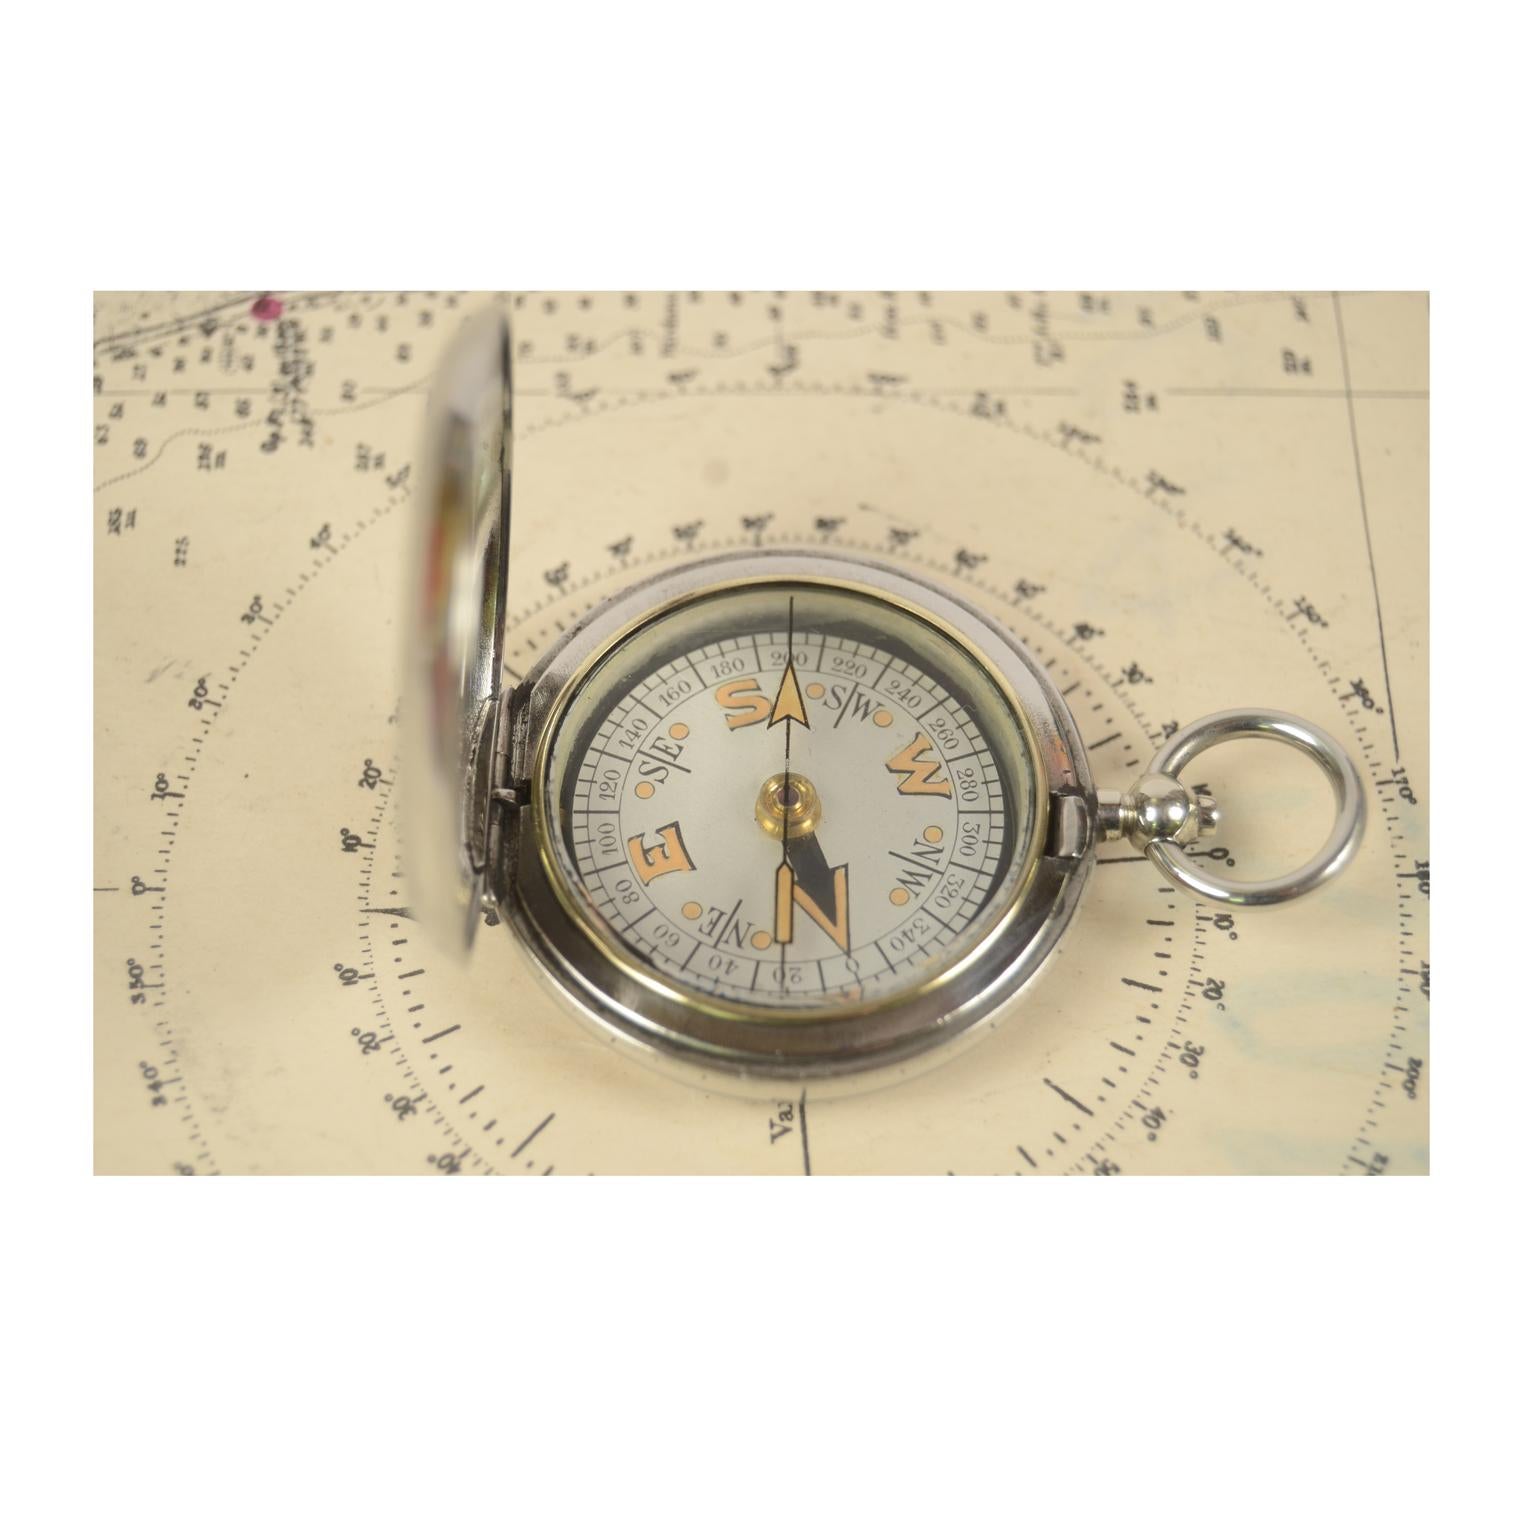 dennison birmingham compass 1917 price